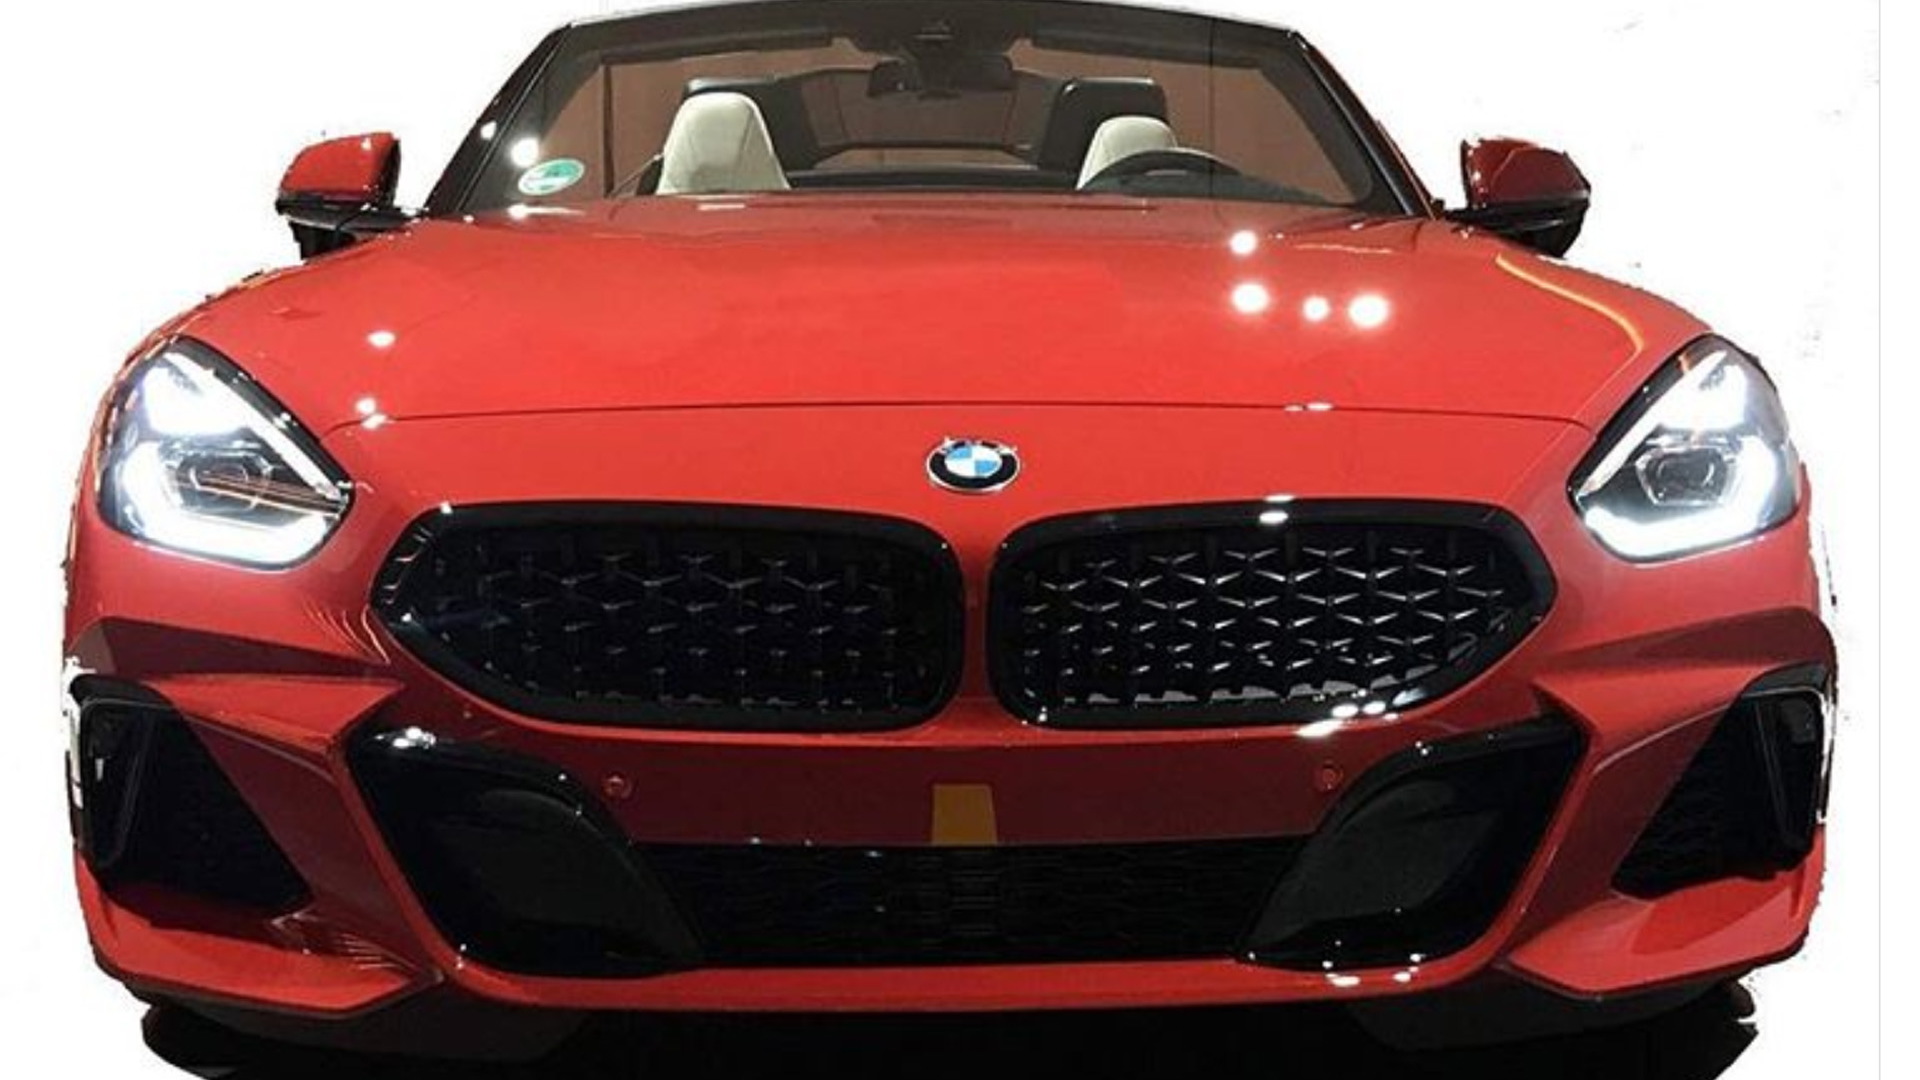 2019 BMW Z4 leak - Image via Instagram user liucunyi